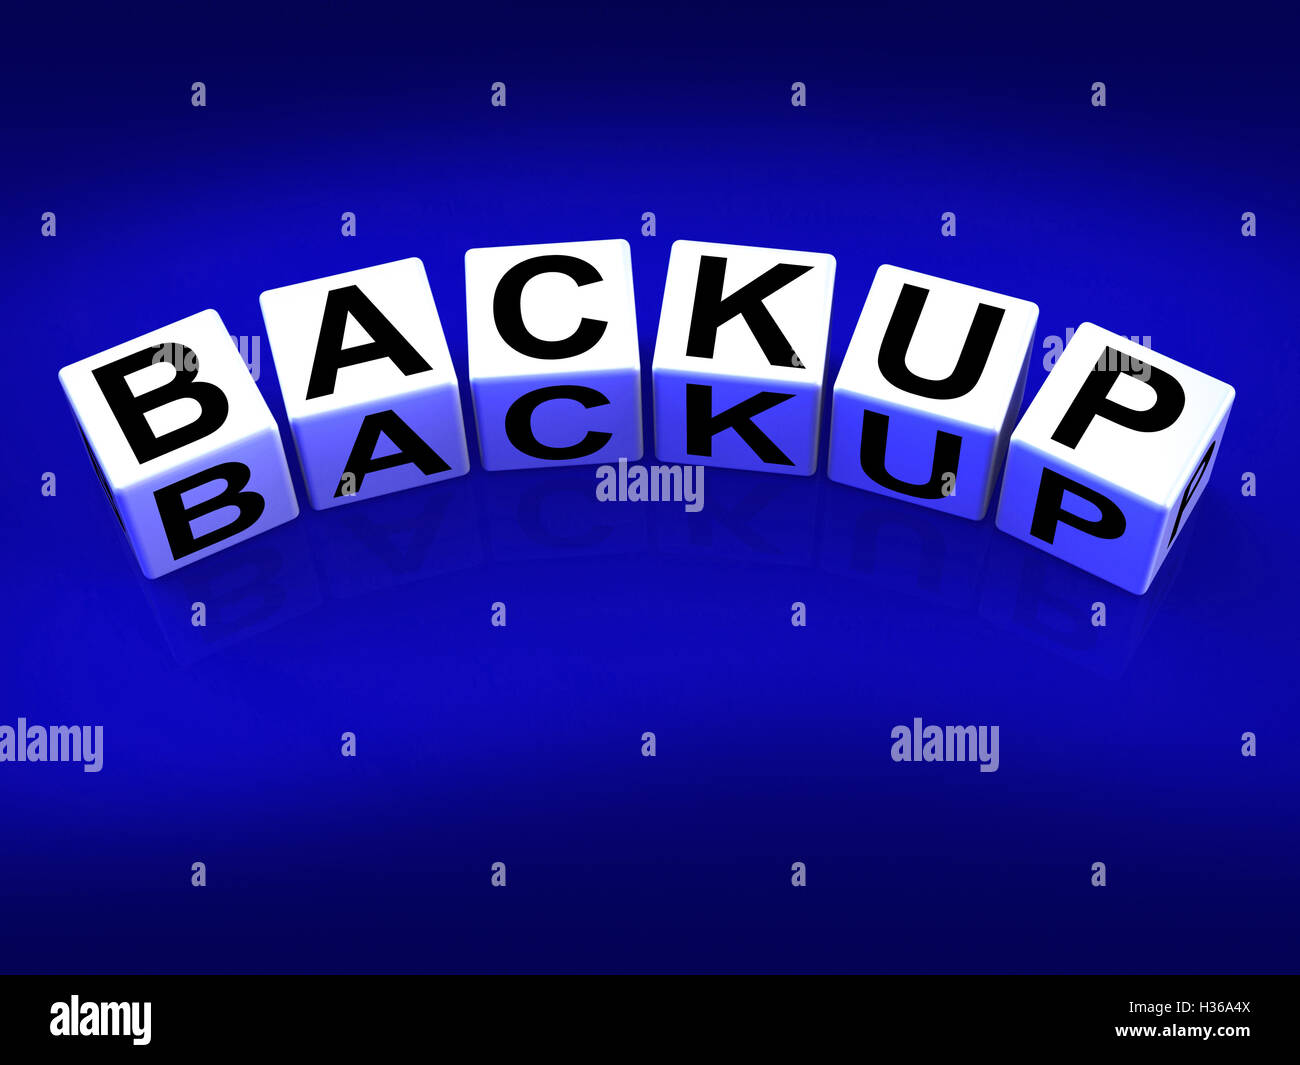 Backup-Blöcke bedeuten Store wiederherstellen oder übertragen Dokumente oder Dateien Stockfoto